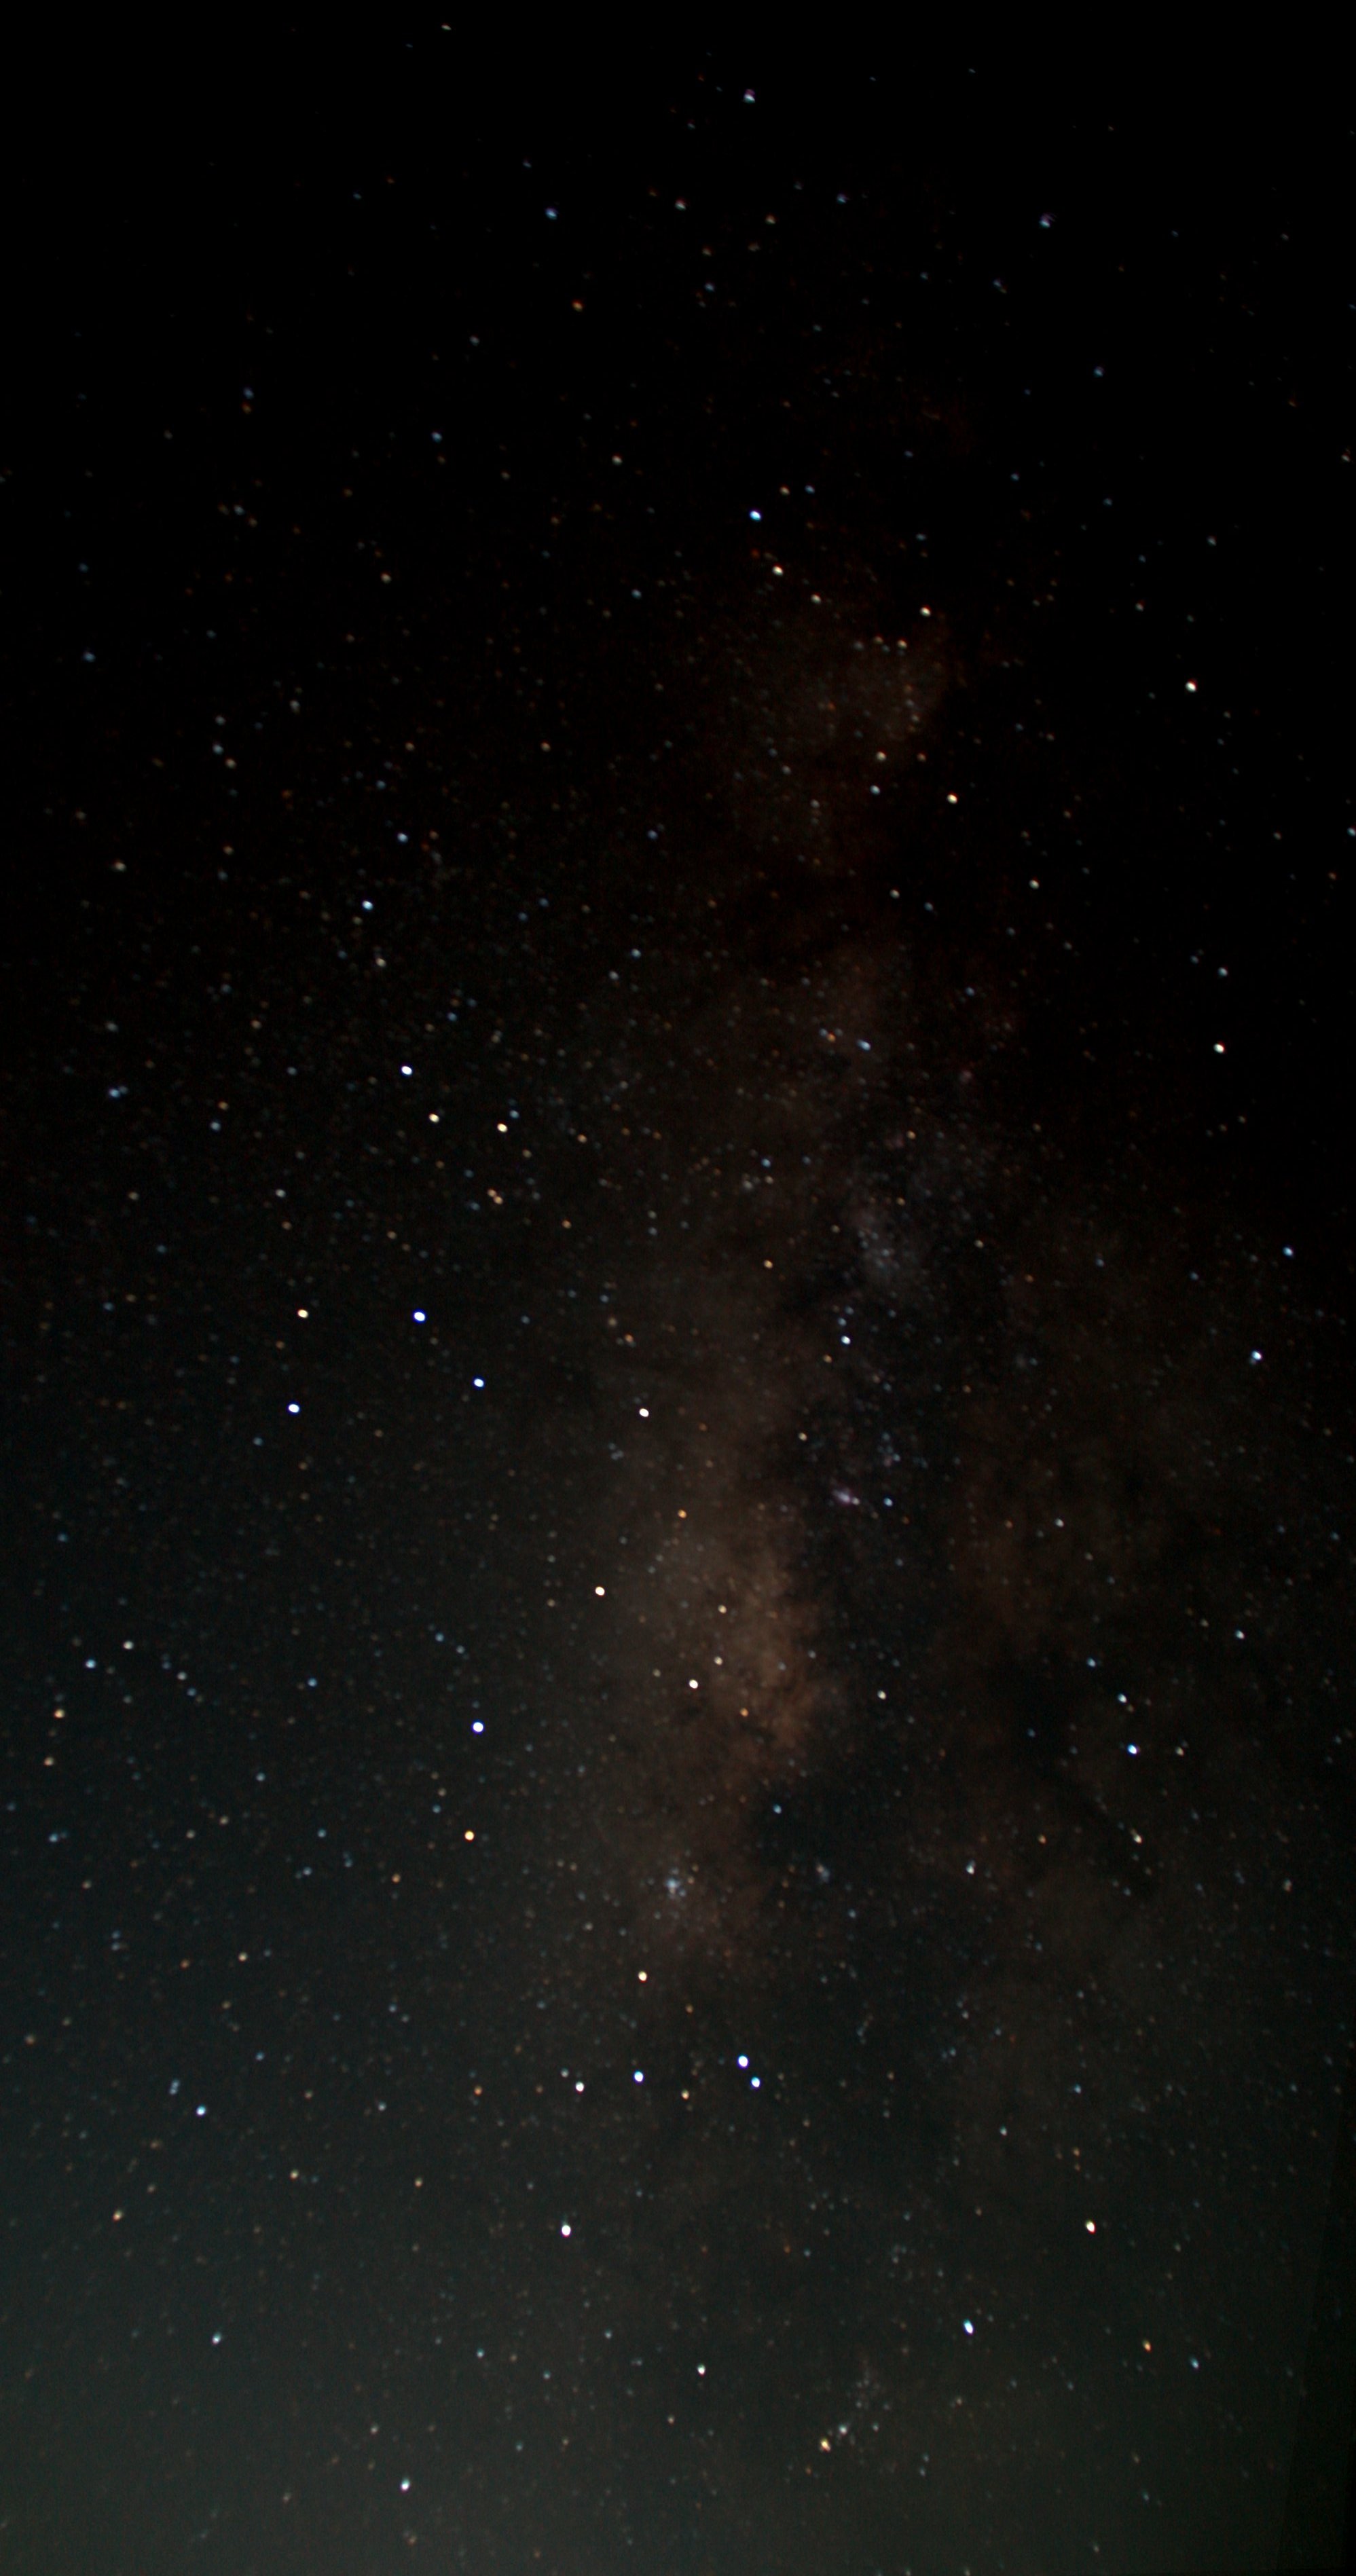 银河，文昌，18mm F3.5 30sec 19张叠加 2012年7月19日 午夜